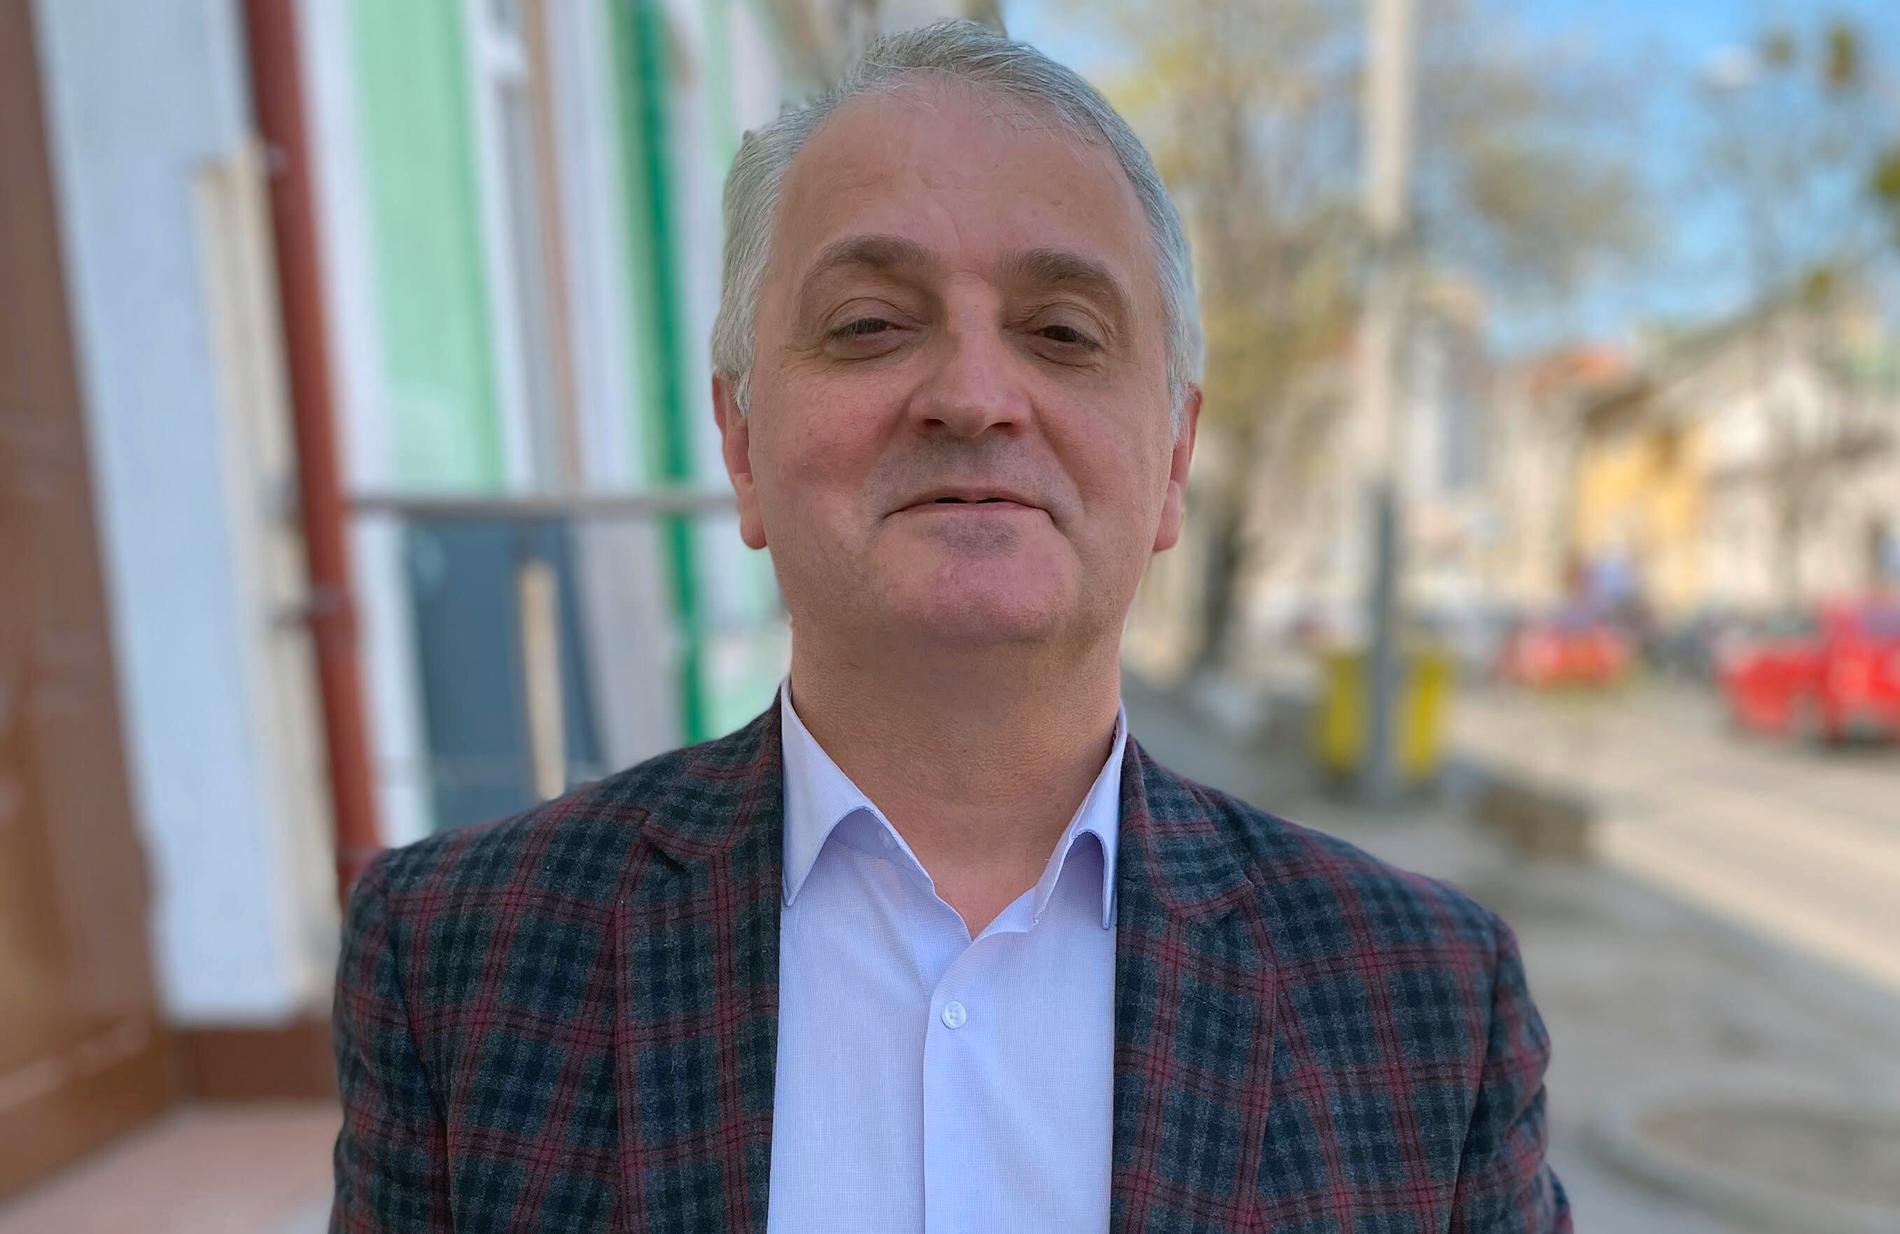 Petru Macovei, 50, företräder ett förbund för Moldaviens oberoende tidningar, API, Den fria pressens förbund.